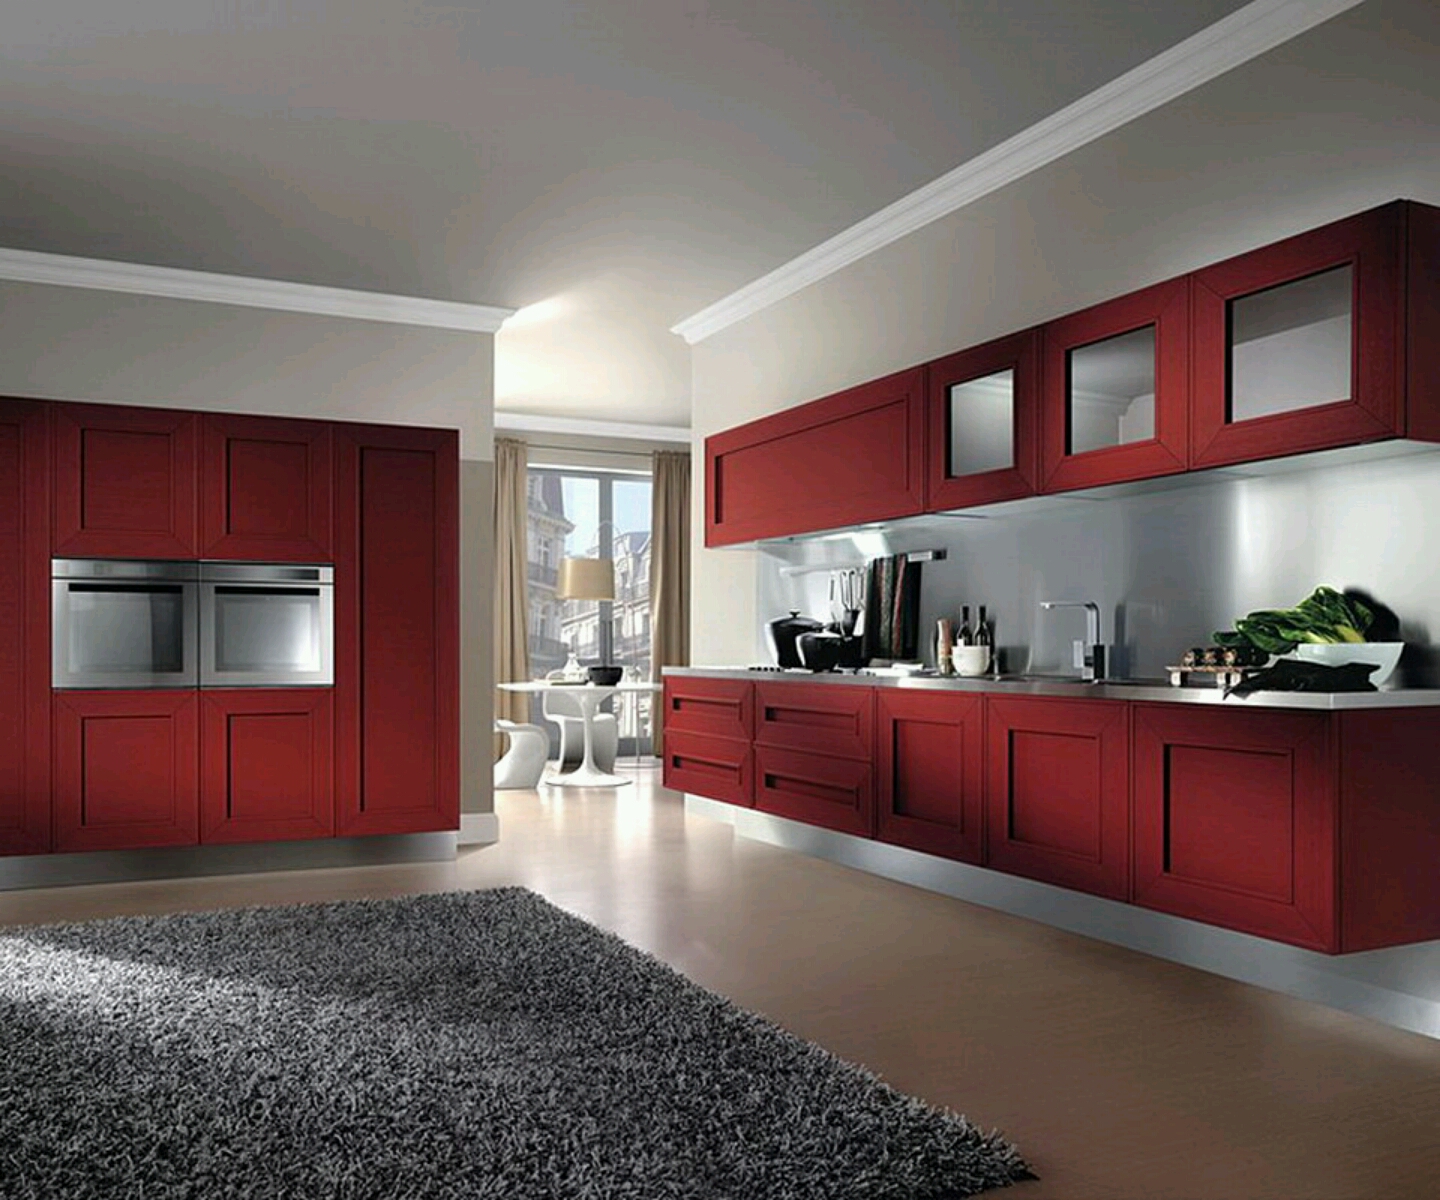 New home designs latest.: Modern kitchen designs ideas.